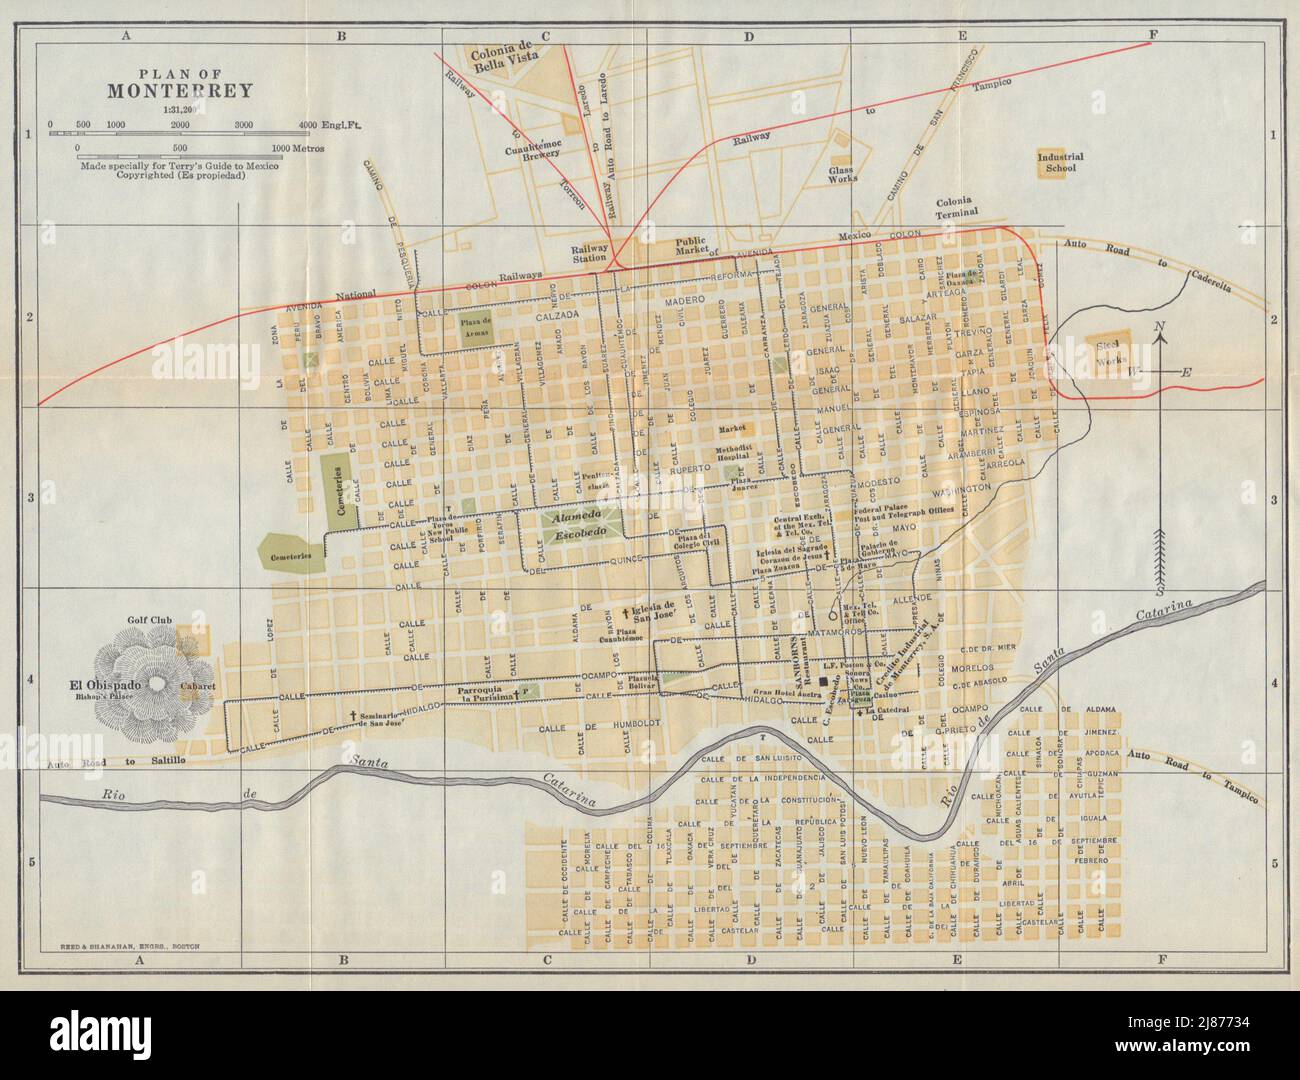 MONTERREY city/town plan. Mexico. Mapa de la ciudad. City/town plan 1938 Stock Photo